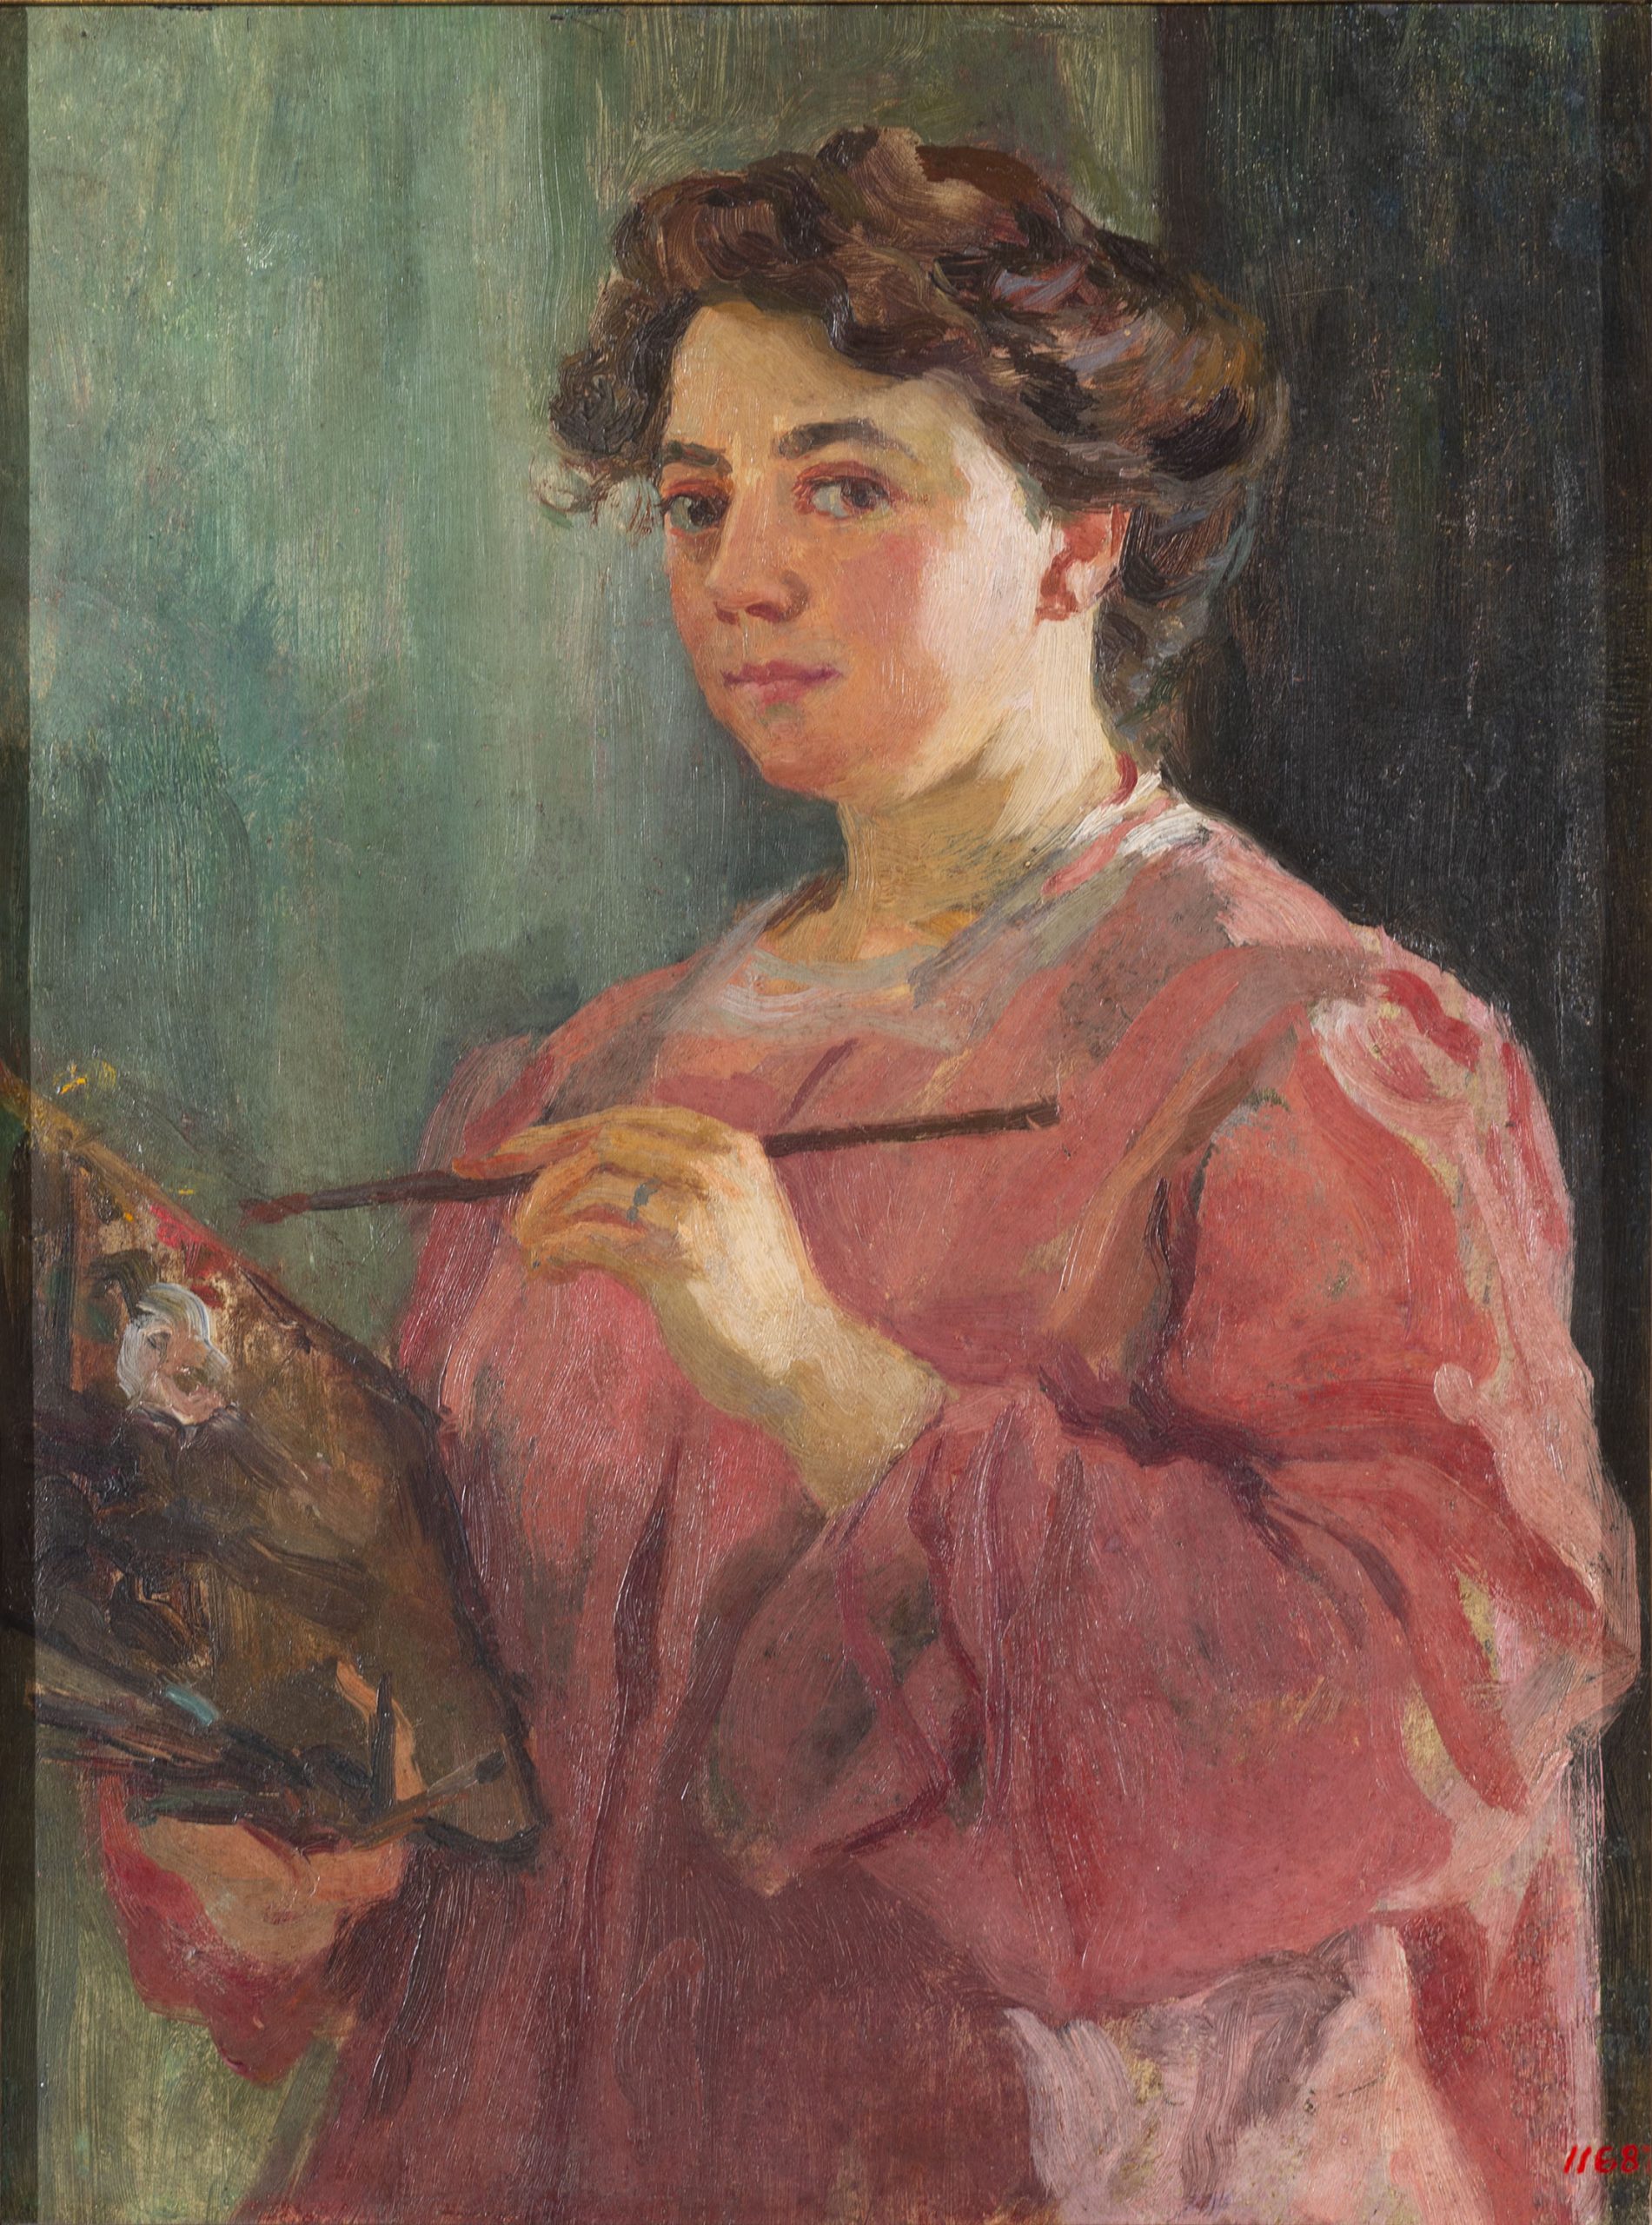 Lluïsa Vidal, Self-portrait, circa 1899. Museu Nacional d'Art de Catalunya, donated by Francesca Vidal and other brothers of the artist, 1935.